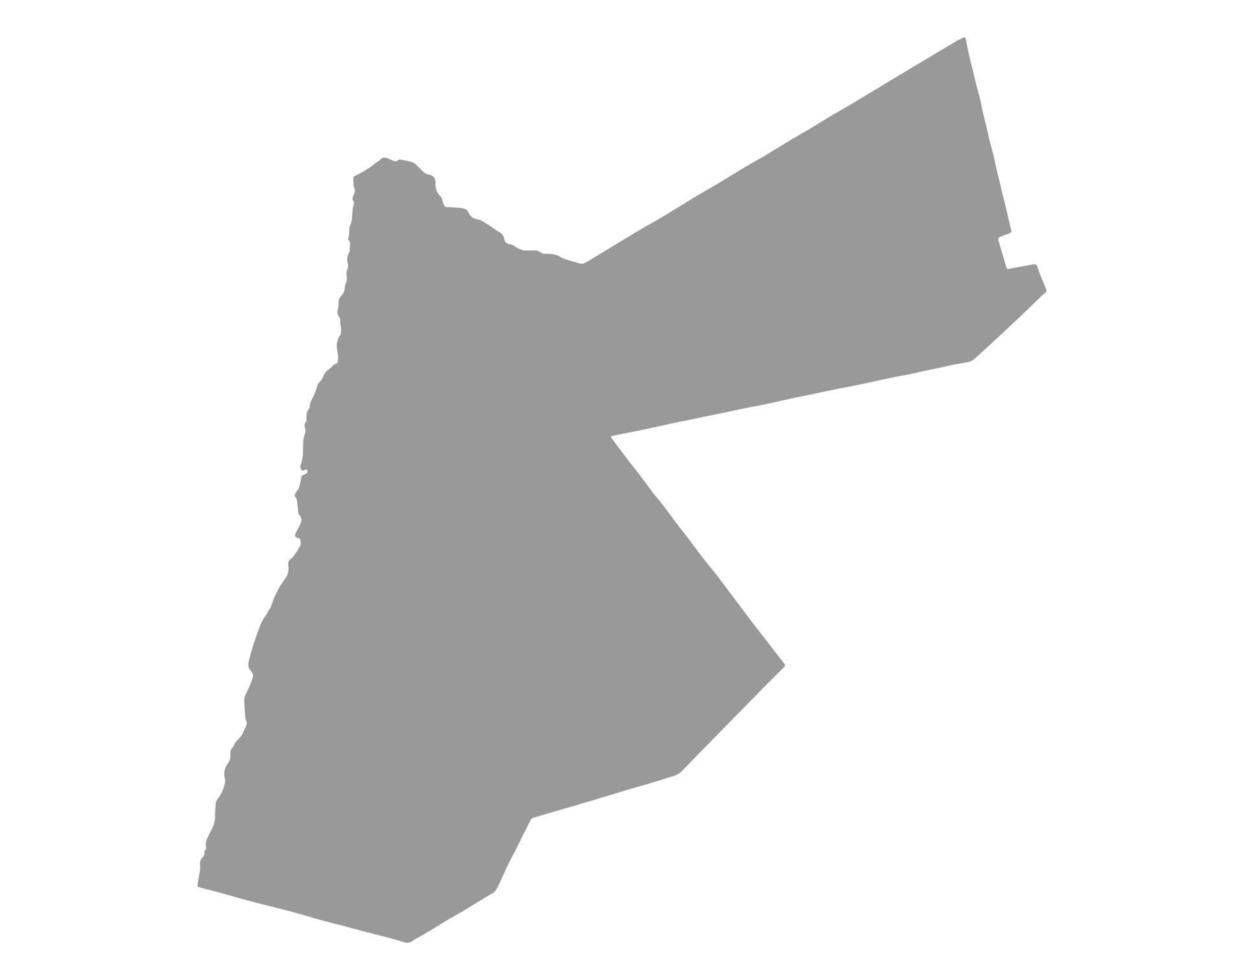 mapa da Jordânia em png ou background.symbol transparente da ilustração jordan.vector vetor